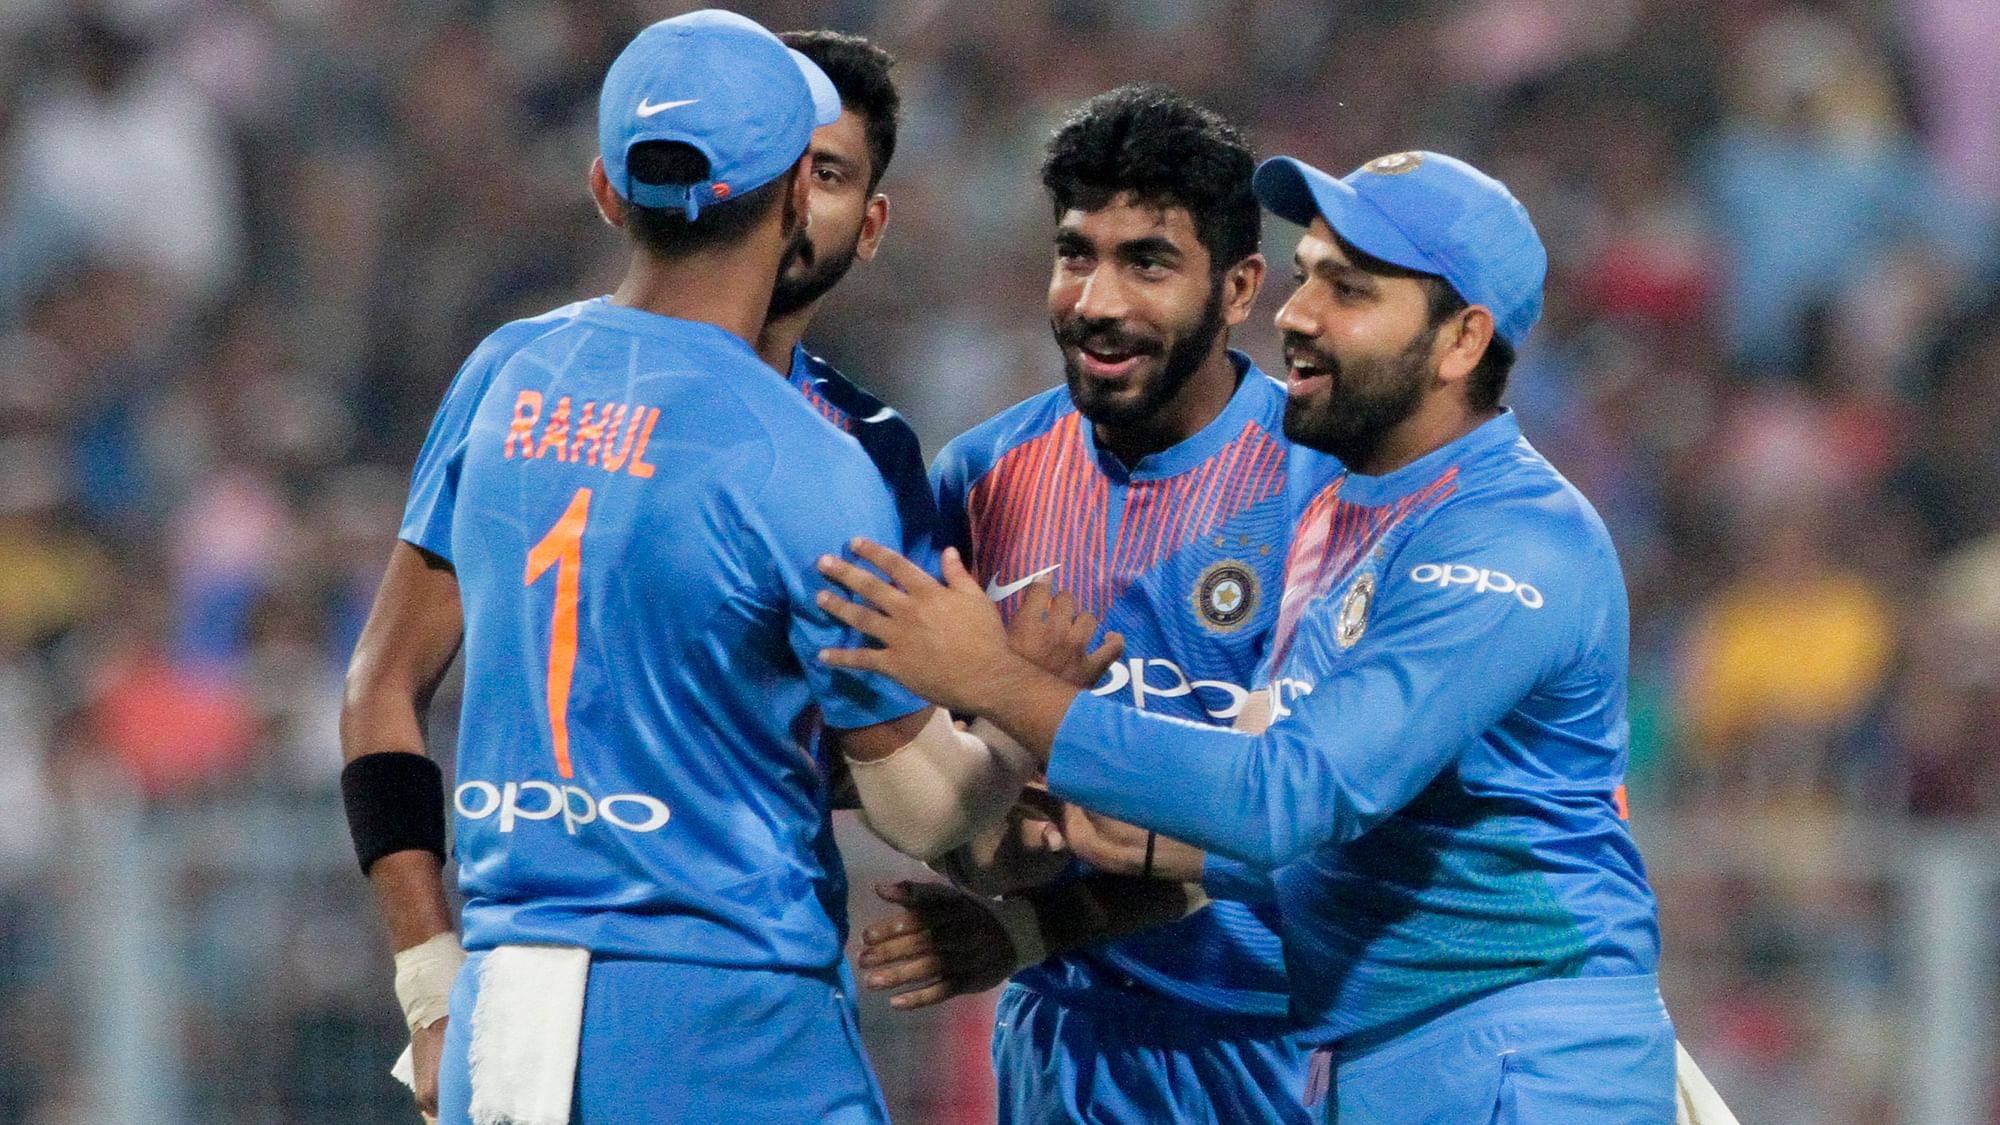 वेस्टइंडीज के खिलाफ पहले टी20 में विकेट लेने के बाद टीम इंडिया